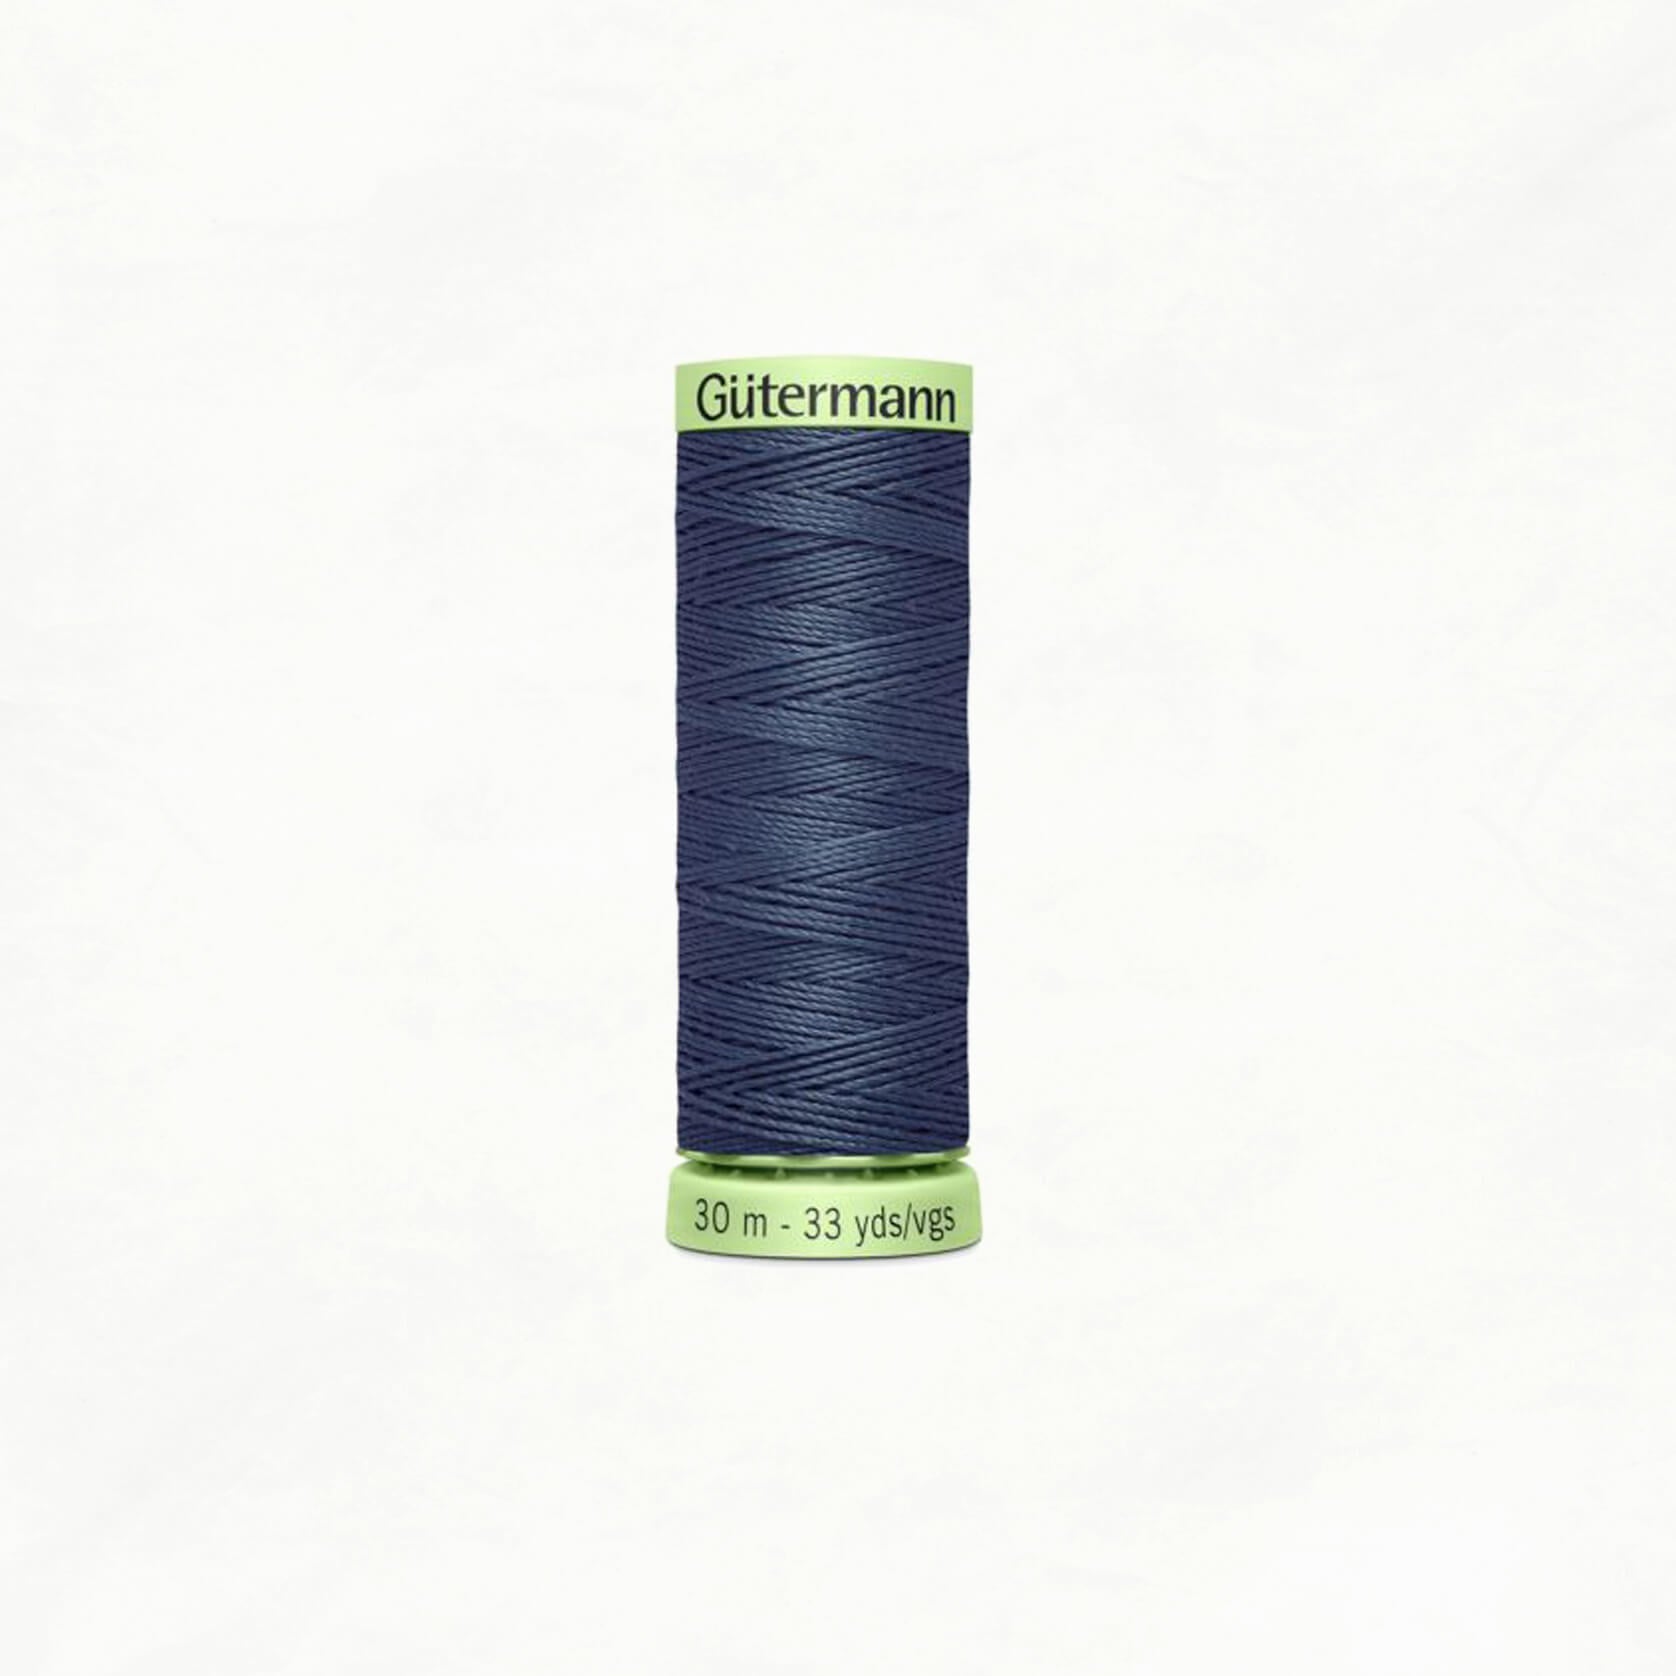 Gütermann Thread, Heavy Duty / Top Stitch